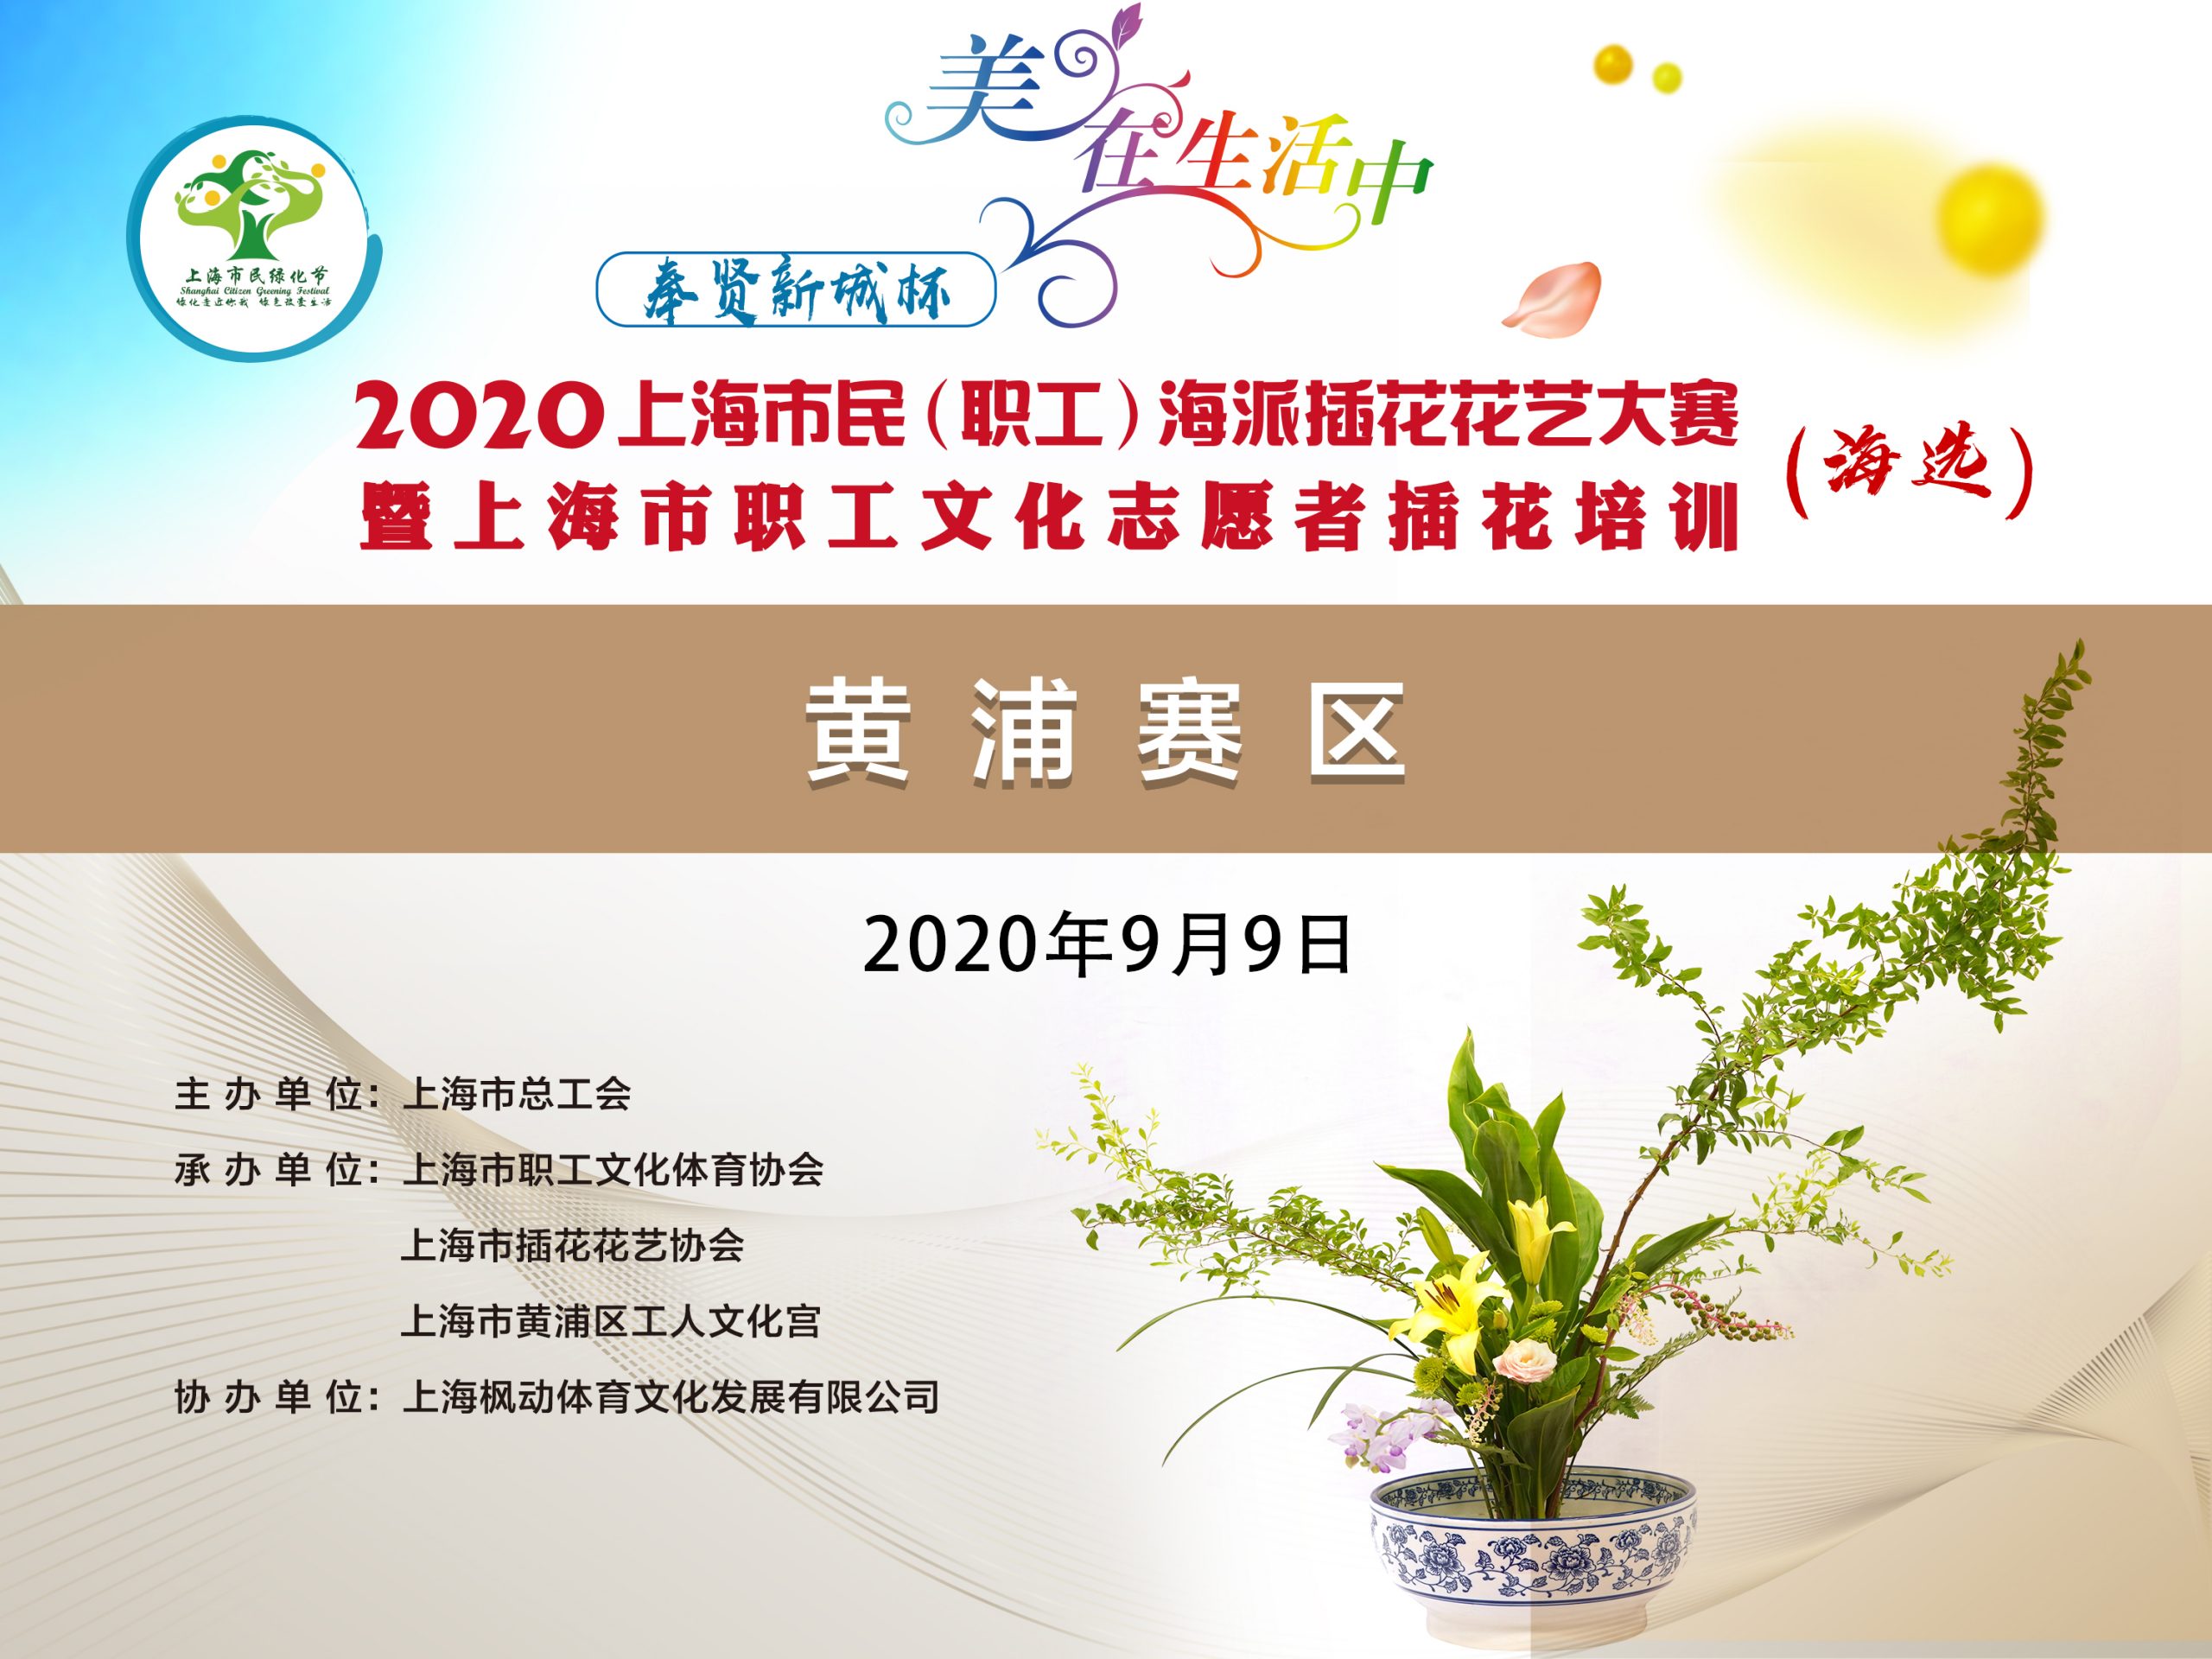 2020年上海市民（职工）海派插花花艺大赛暨上海职工文化志愿者插花培训